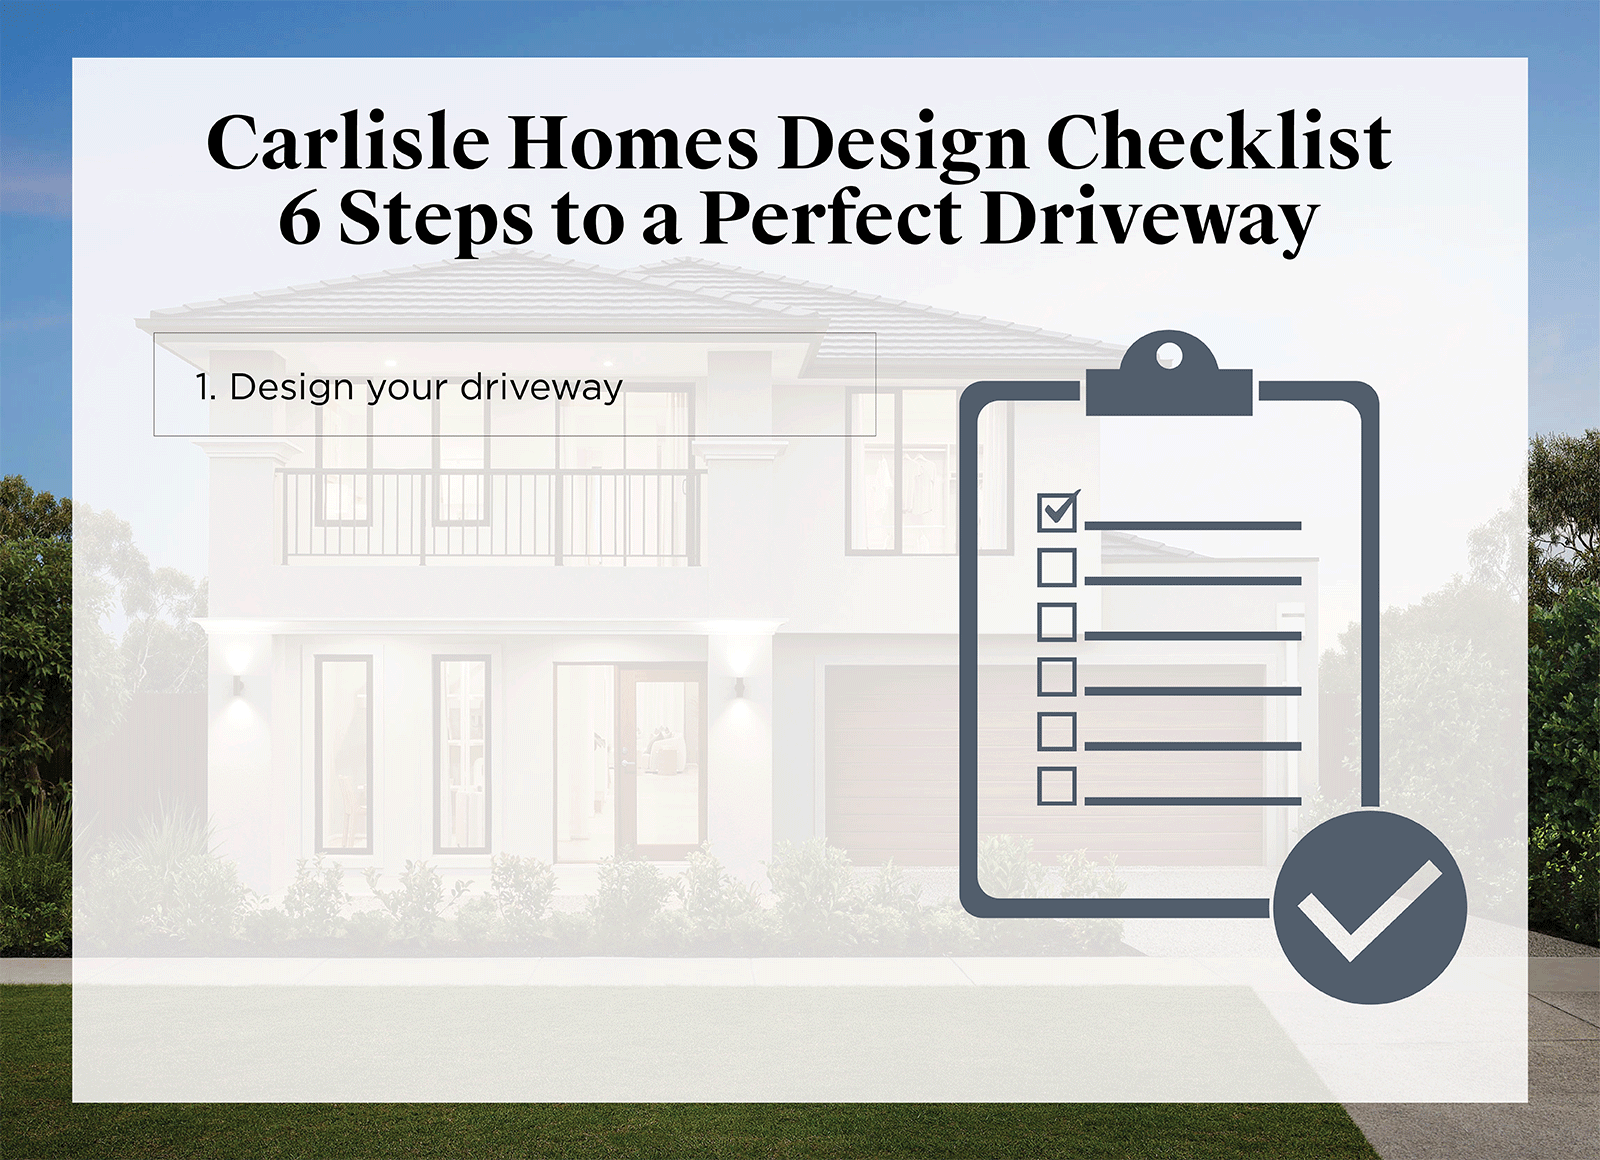 2. Home-Checklist-Driveway-Carlisle-Homes-Body1-v2.gif